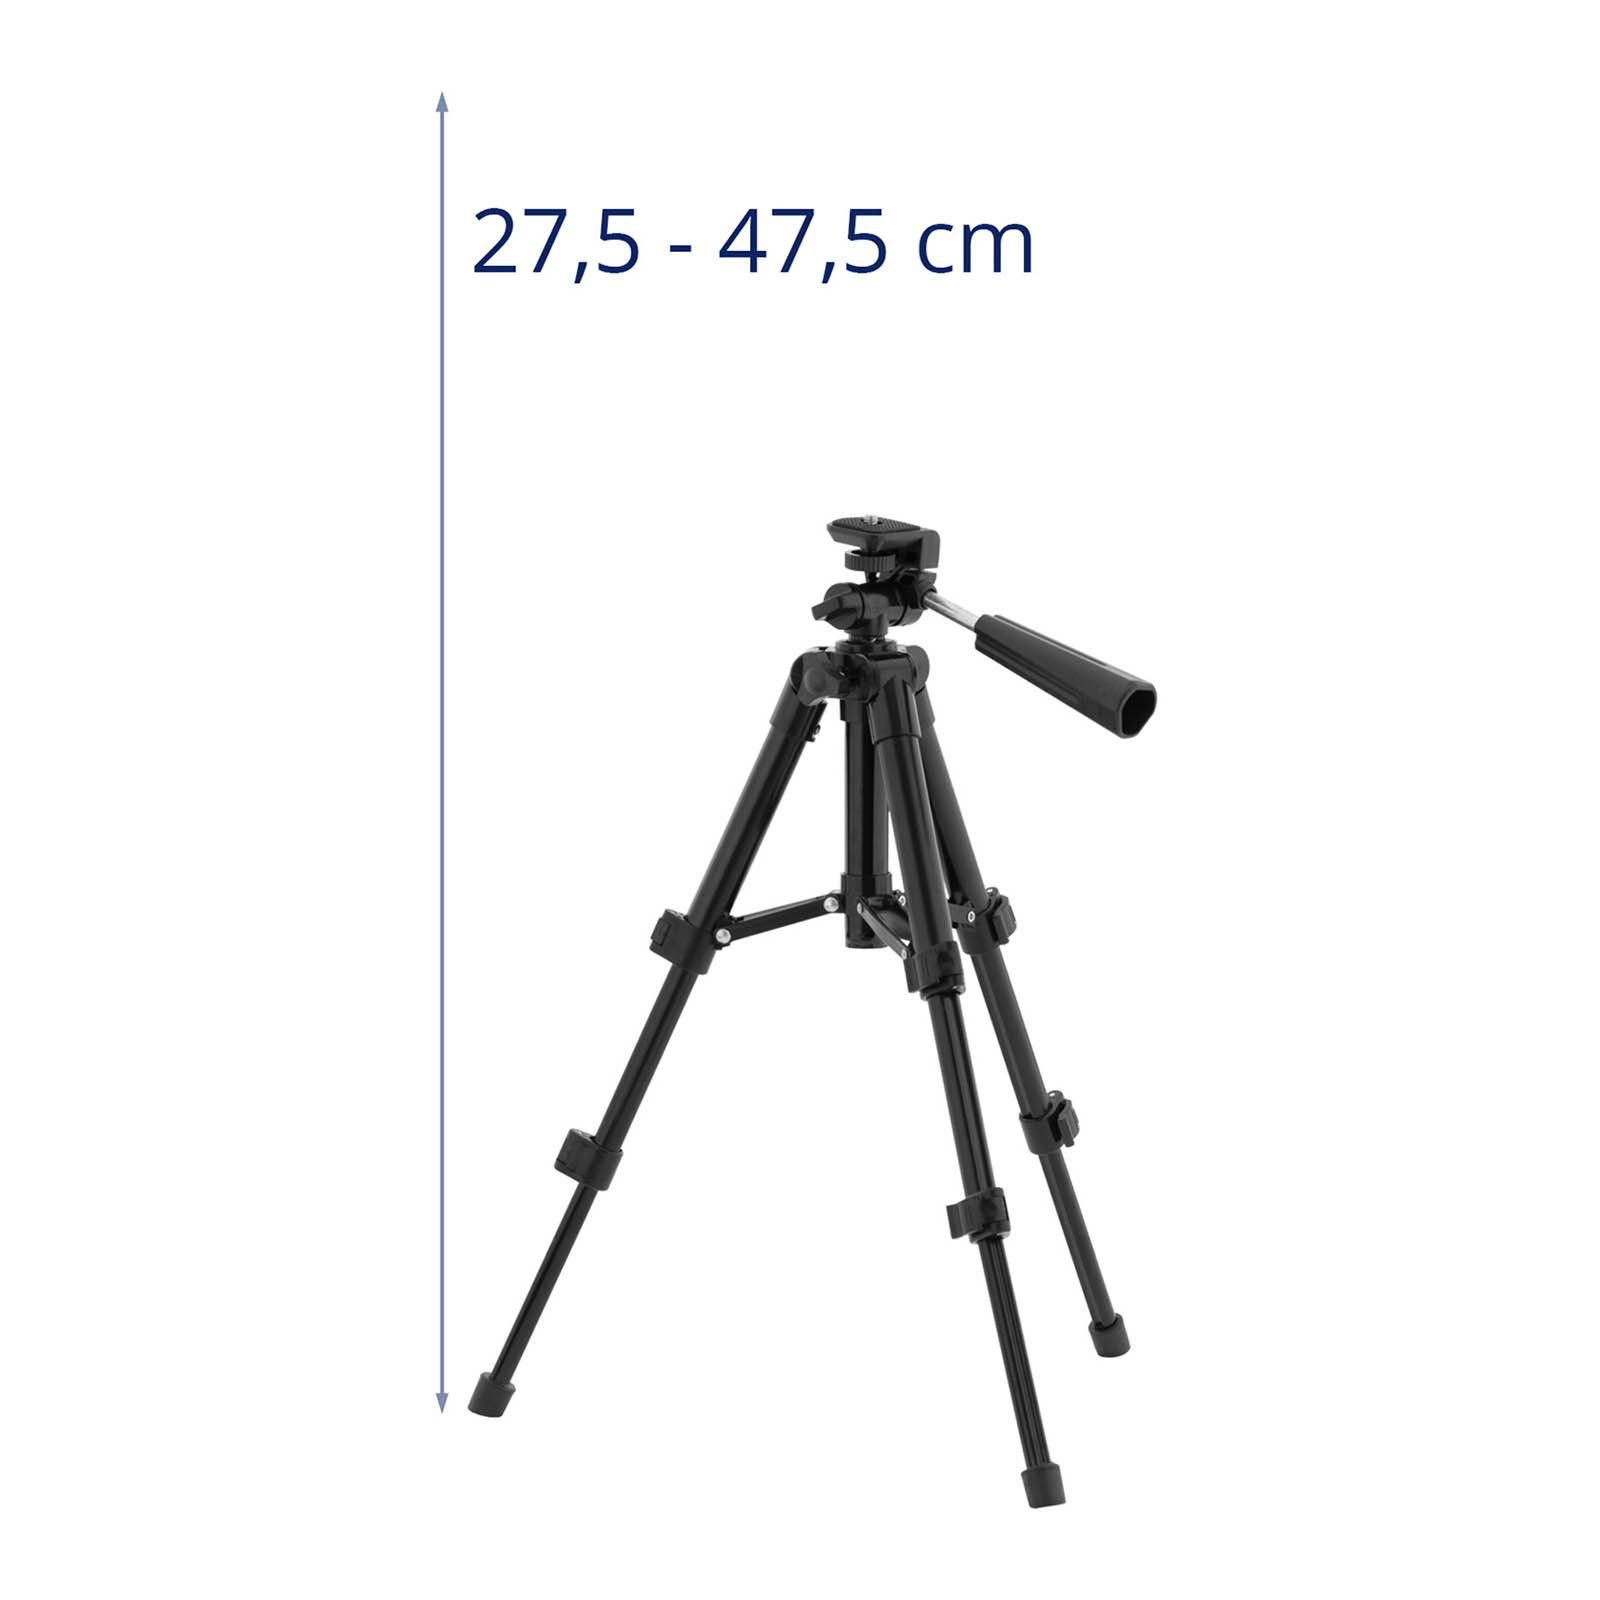 Systems Steinberg 276-474 mm Kamerastativ 1/4"-Gewinde Stativ Dreibeinstativ universal Tripod